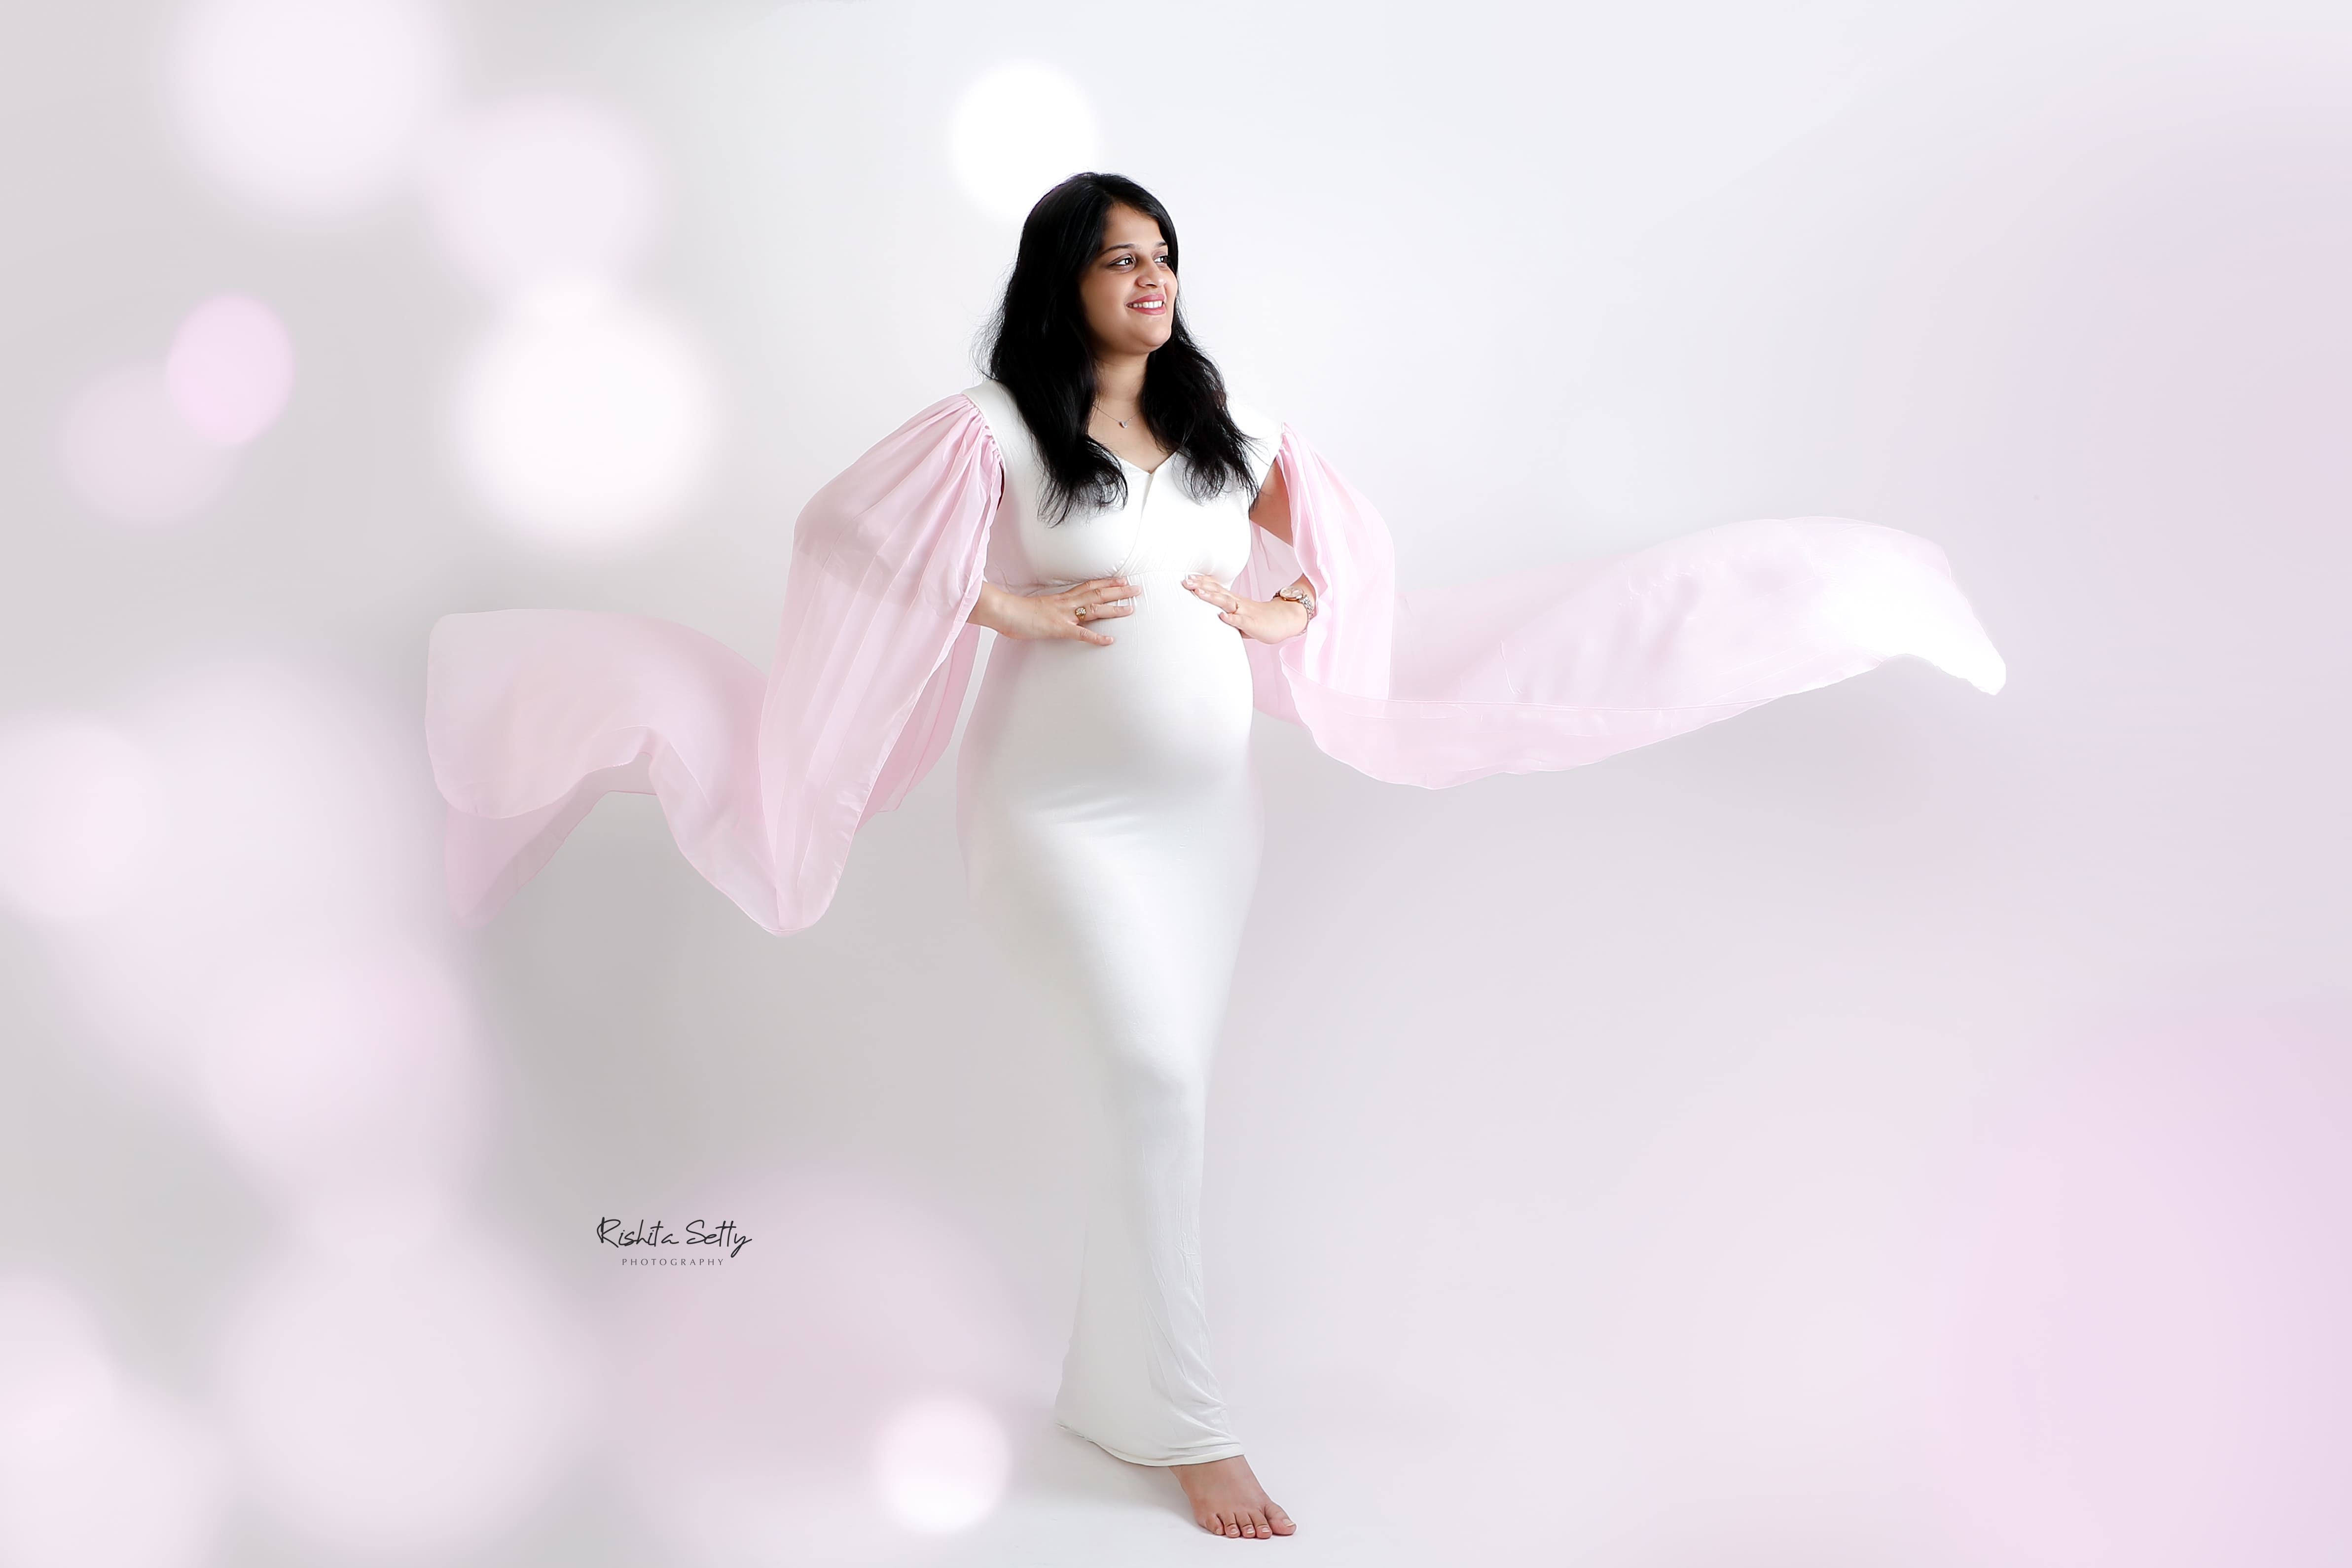 Maternity Shoot by Rishita Setty